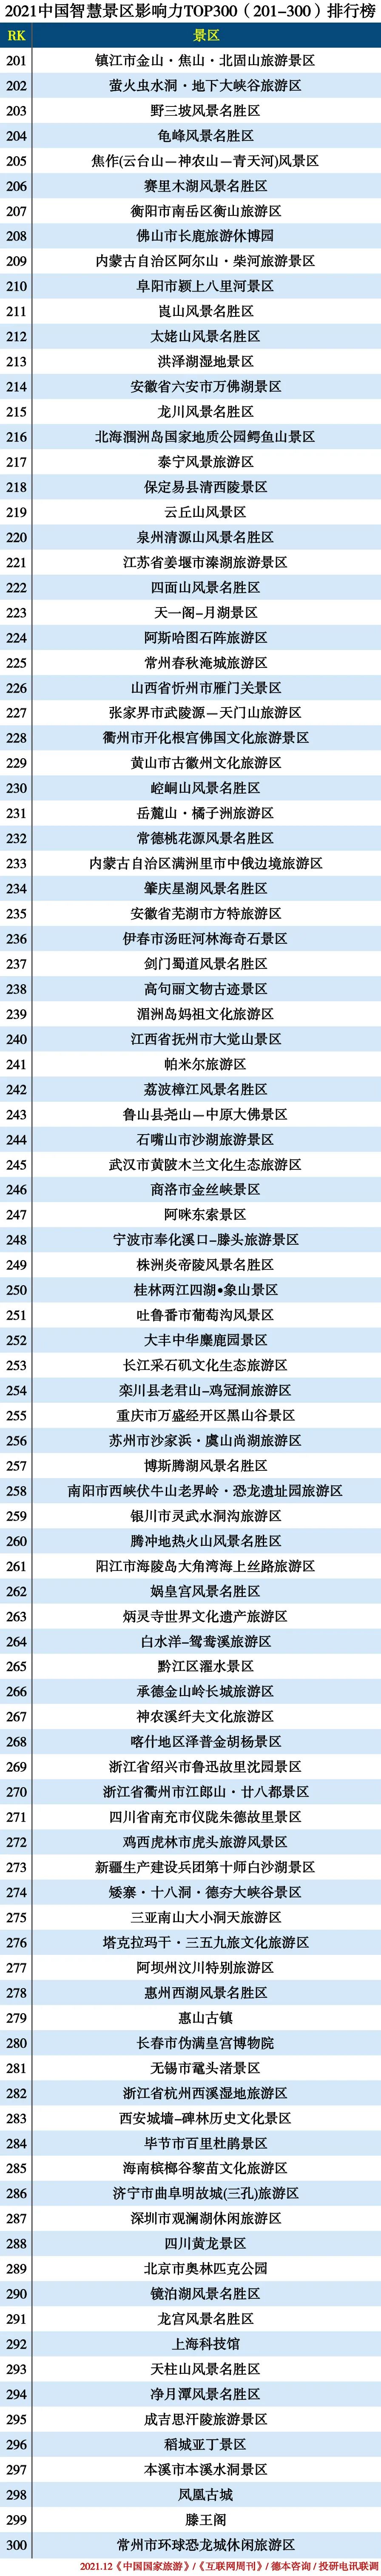 2021中国智慧景区TOP300—201-300.jpg